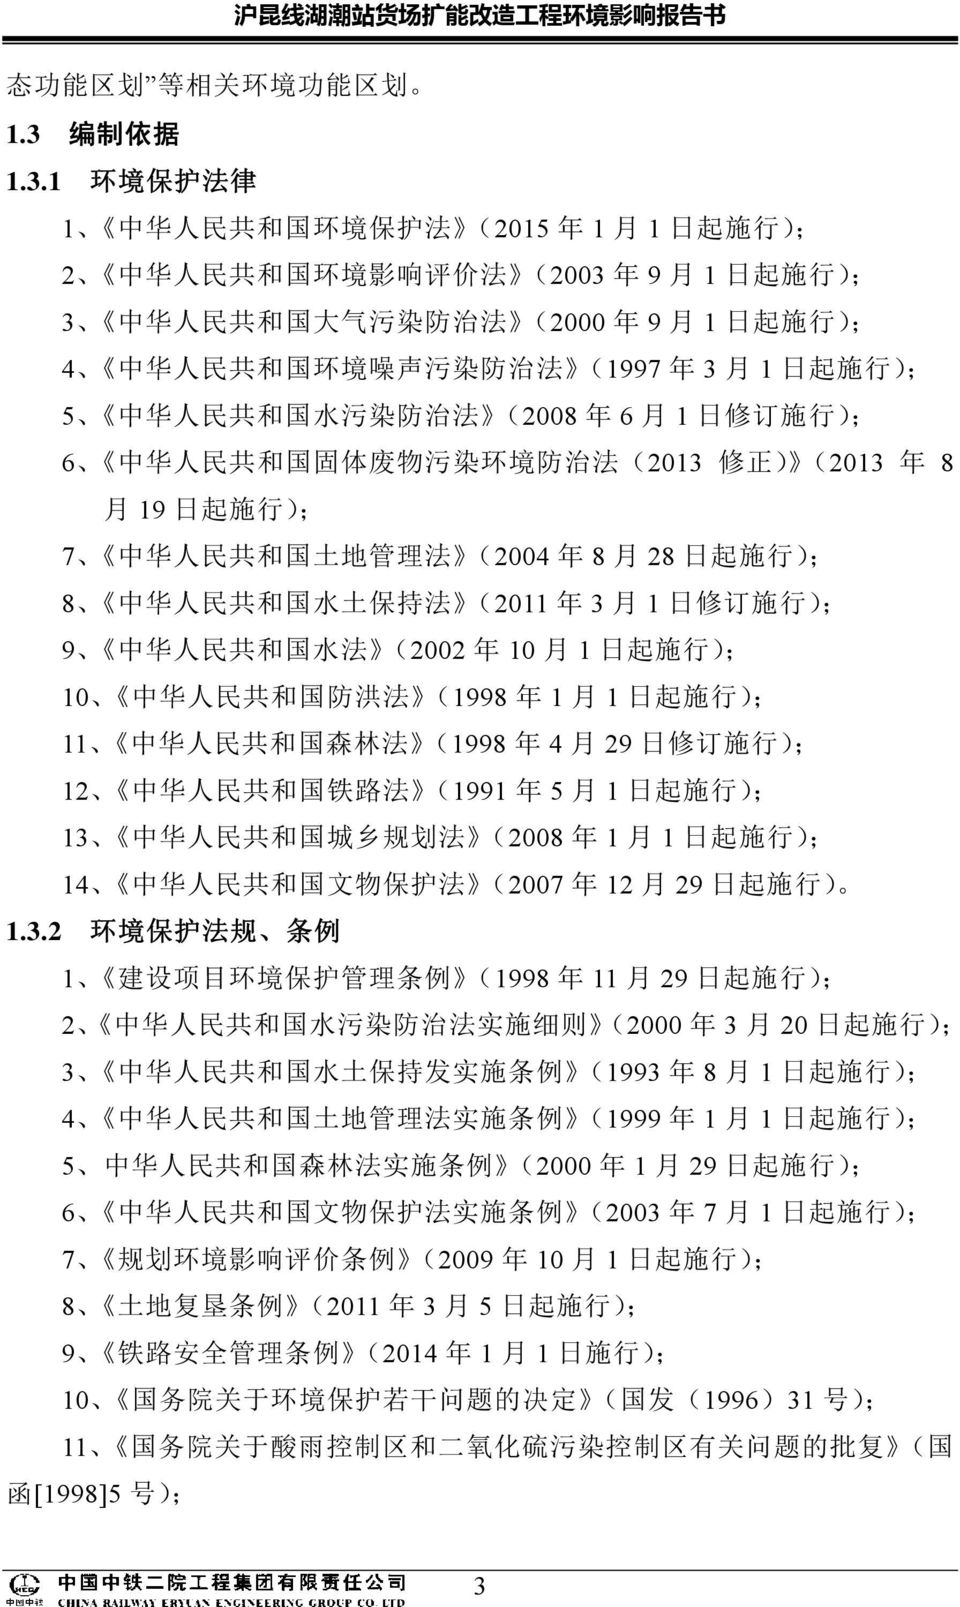 1 环 境 保 护 法 律 1 中 华 人 民 共 和 国 环 境 保 护 法 (2015 年 1 月 1 日 起 施 行 ); 2 中 华 人 民 共 和 国 环 境 影 响 评 价 法 (2003 年 9 月 1 日 起 施 行 ); 3 中 华 人 民 共 和 国 大 气 污 染 防 治 法 (2000 年 9 月 1 日 起 施 行 ); 4 中 华 人 民 共 和 国 环 境 噪 声